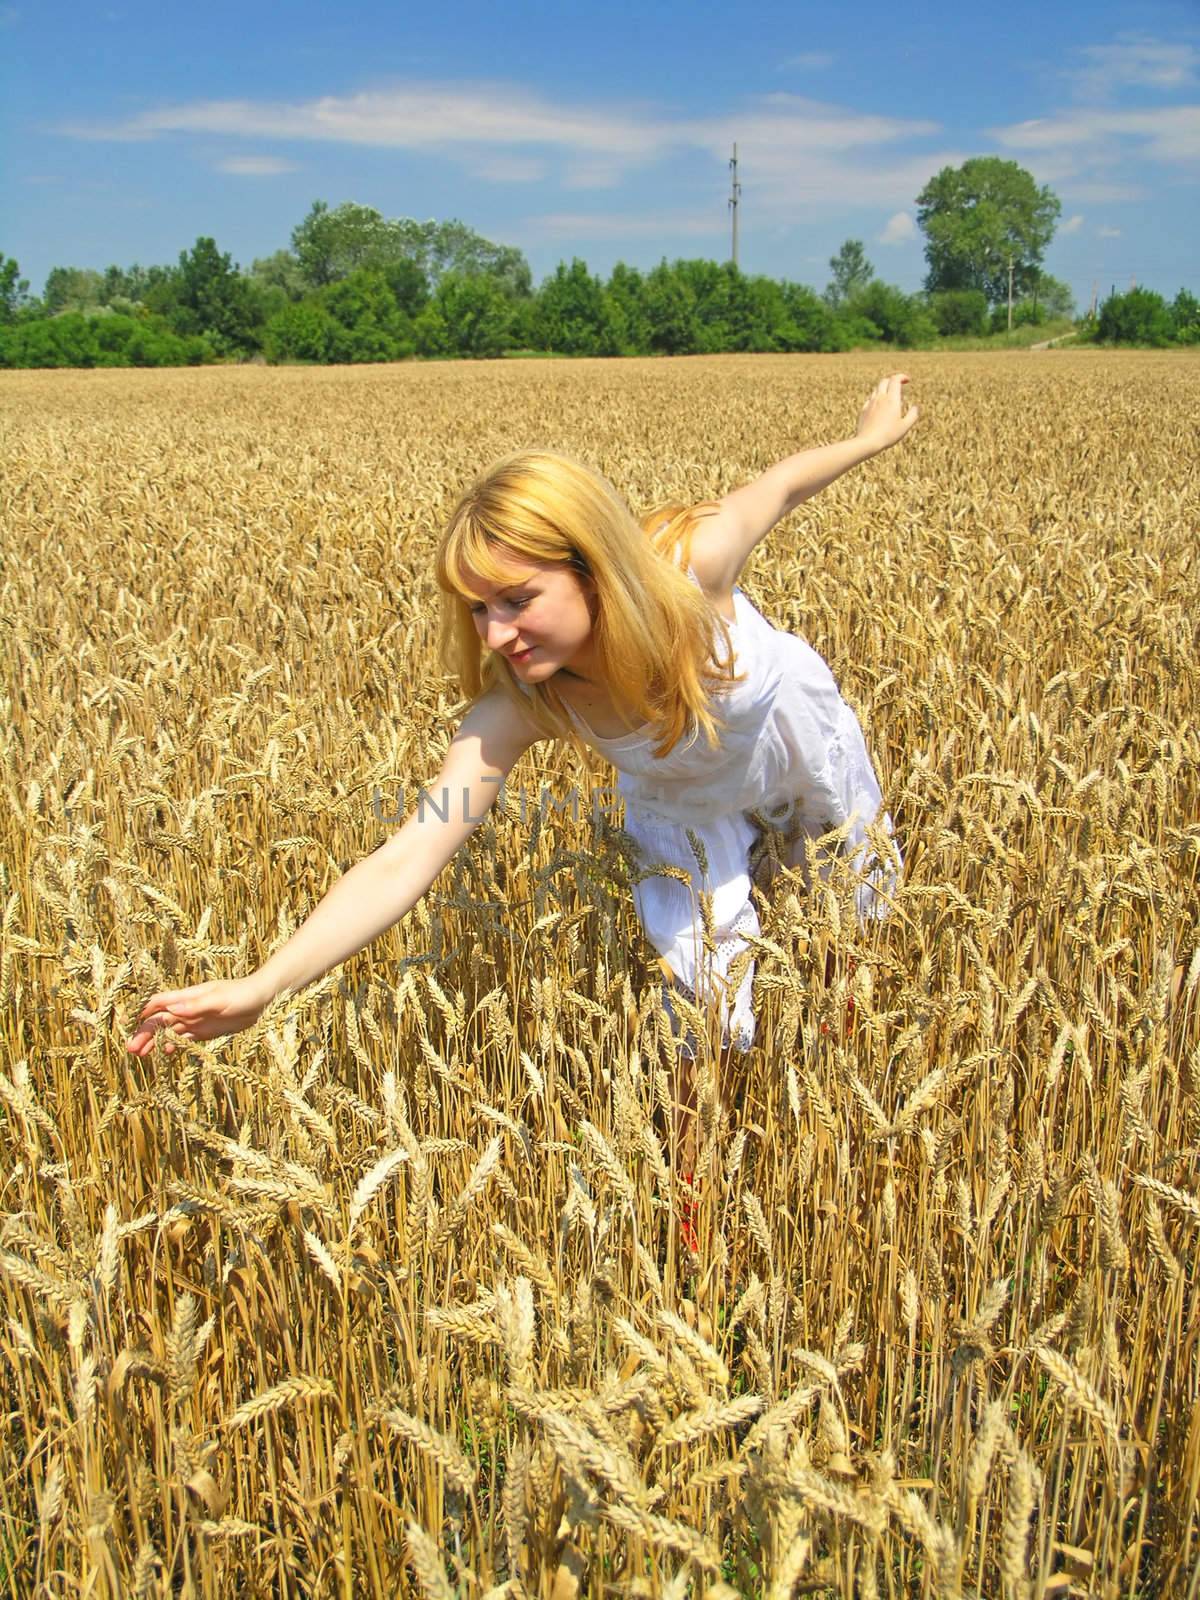 Field of Wheat